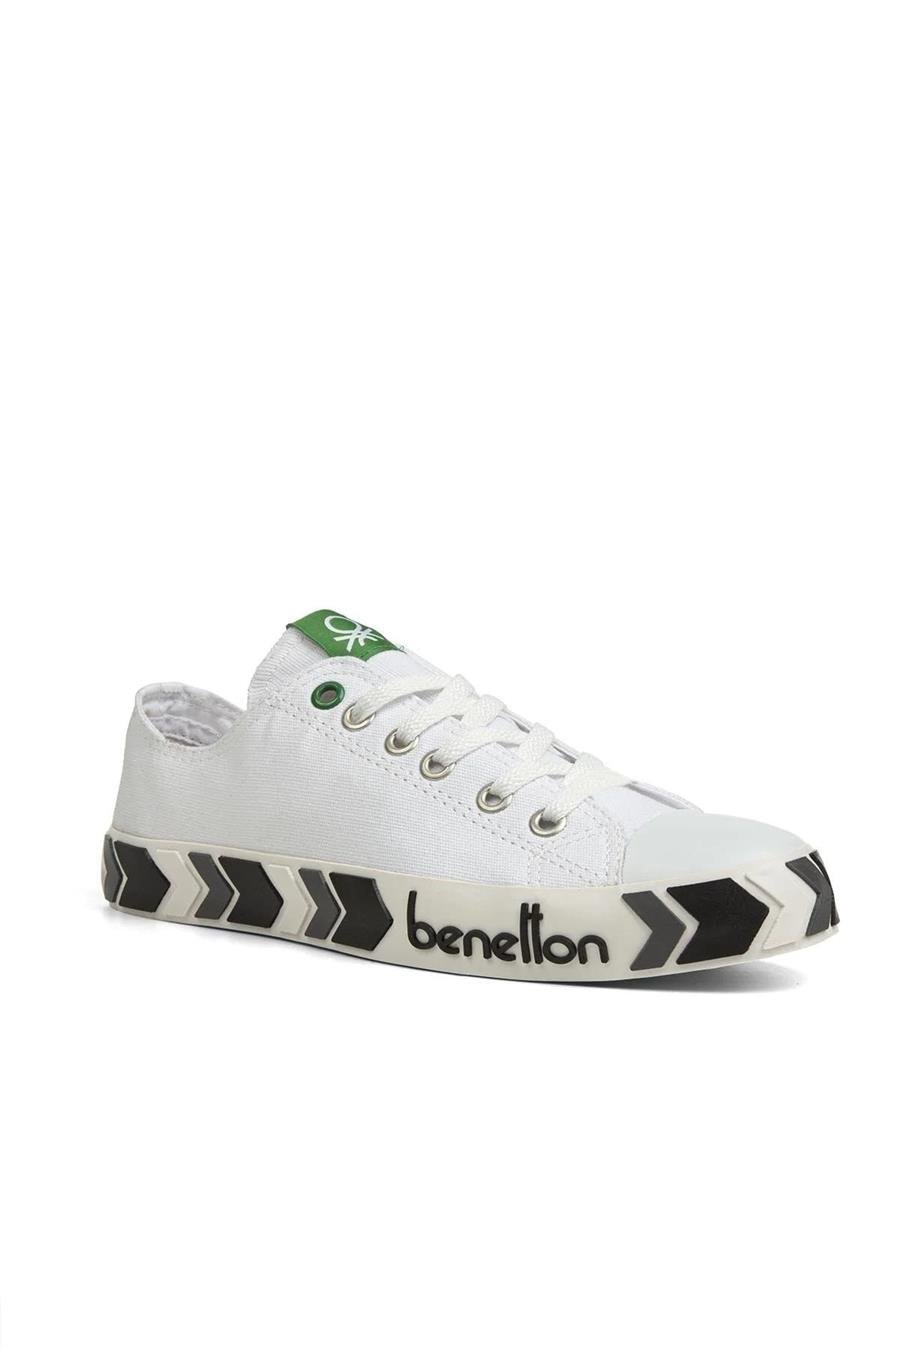 Benetton 30620 Beyaz Siyah Spor Ayakkabı